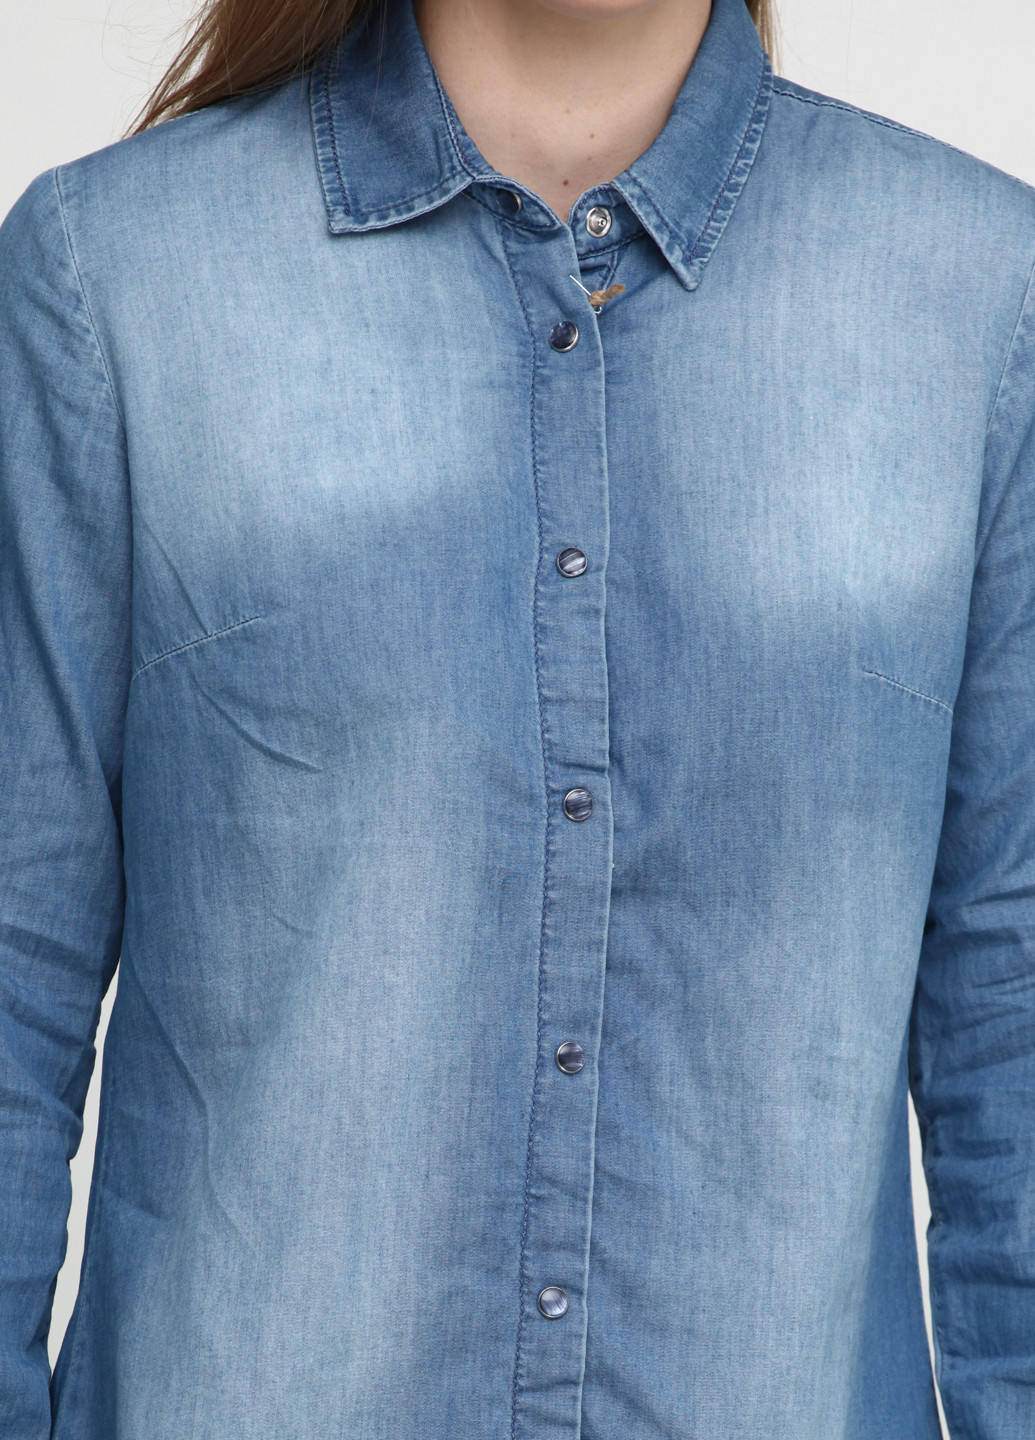 Голубой джинсовая рубашка однотонная Madoc